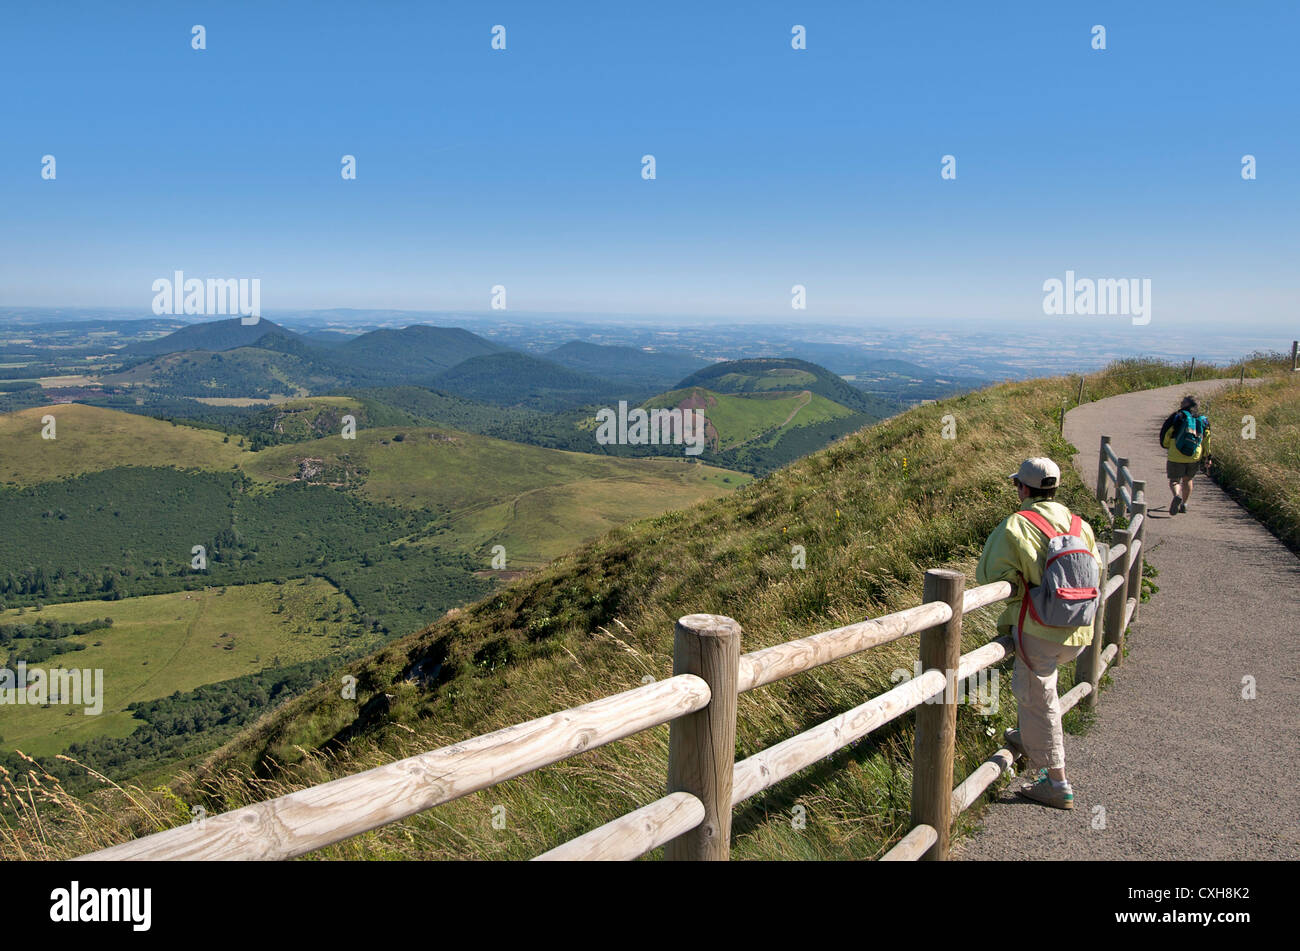 Escursionista guardando la vista dal Puy-de-Dome sul paesaggio vulcanico della Chaine des Puys, Auvergne, Francia. Foto Stock